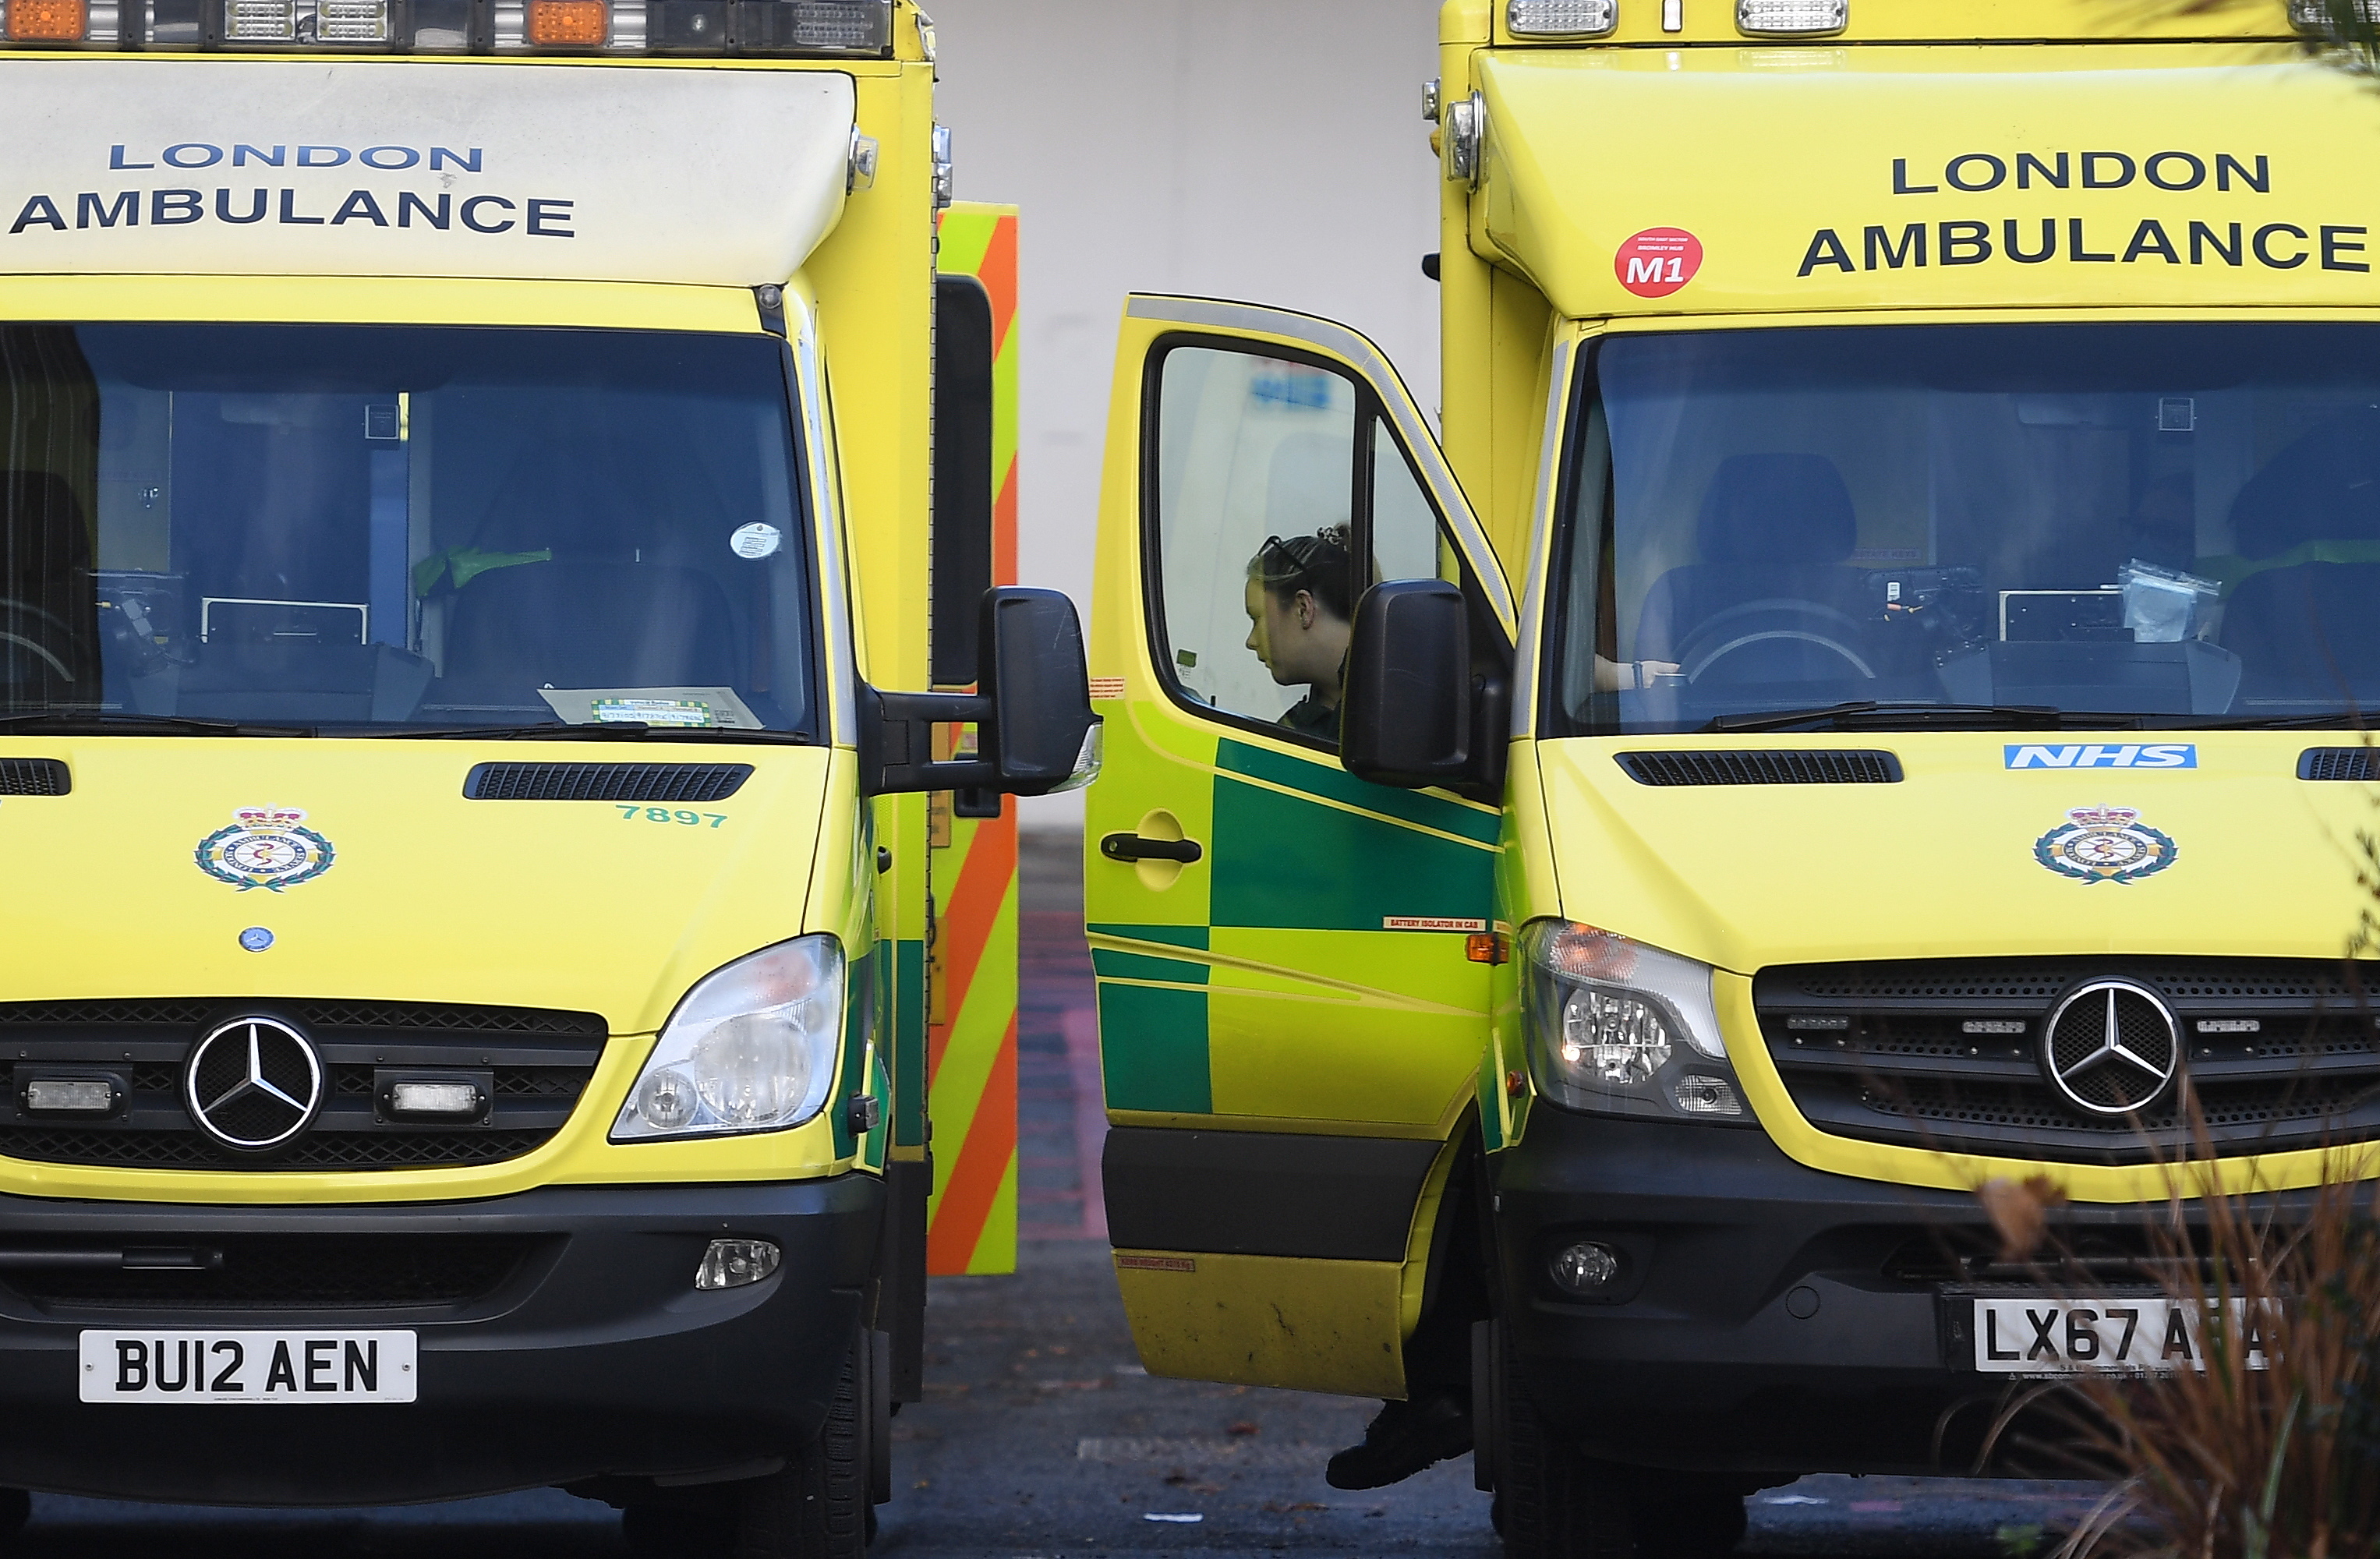 Dos ambulancias paradas en Londres.